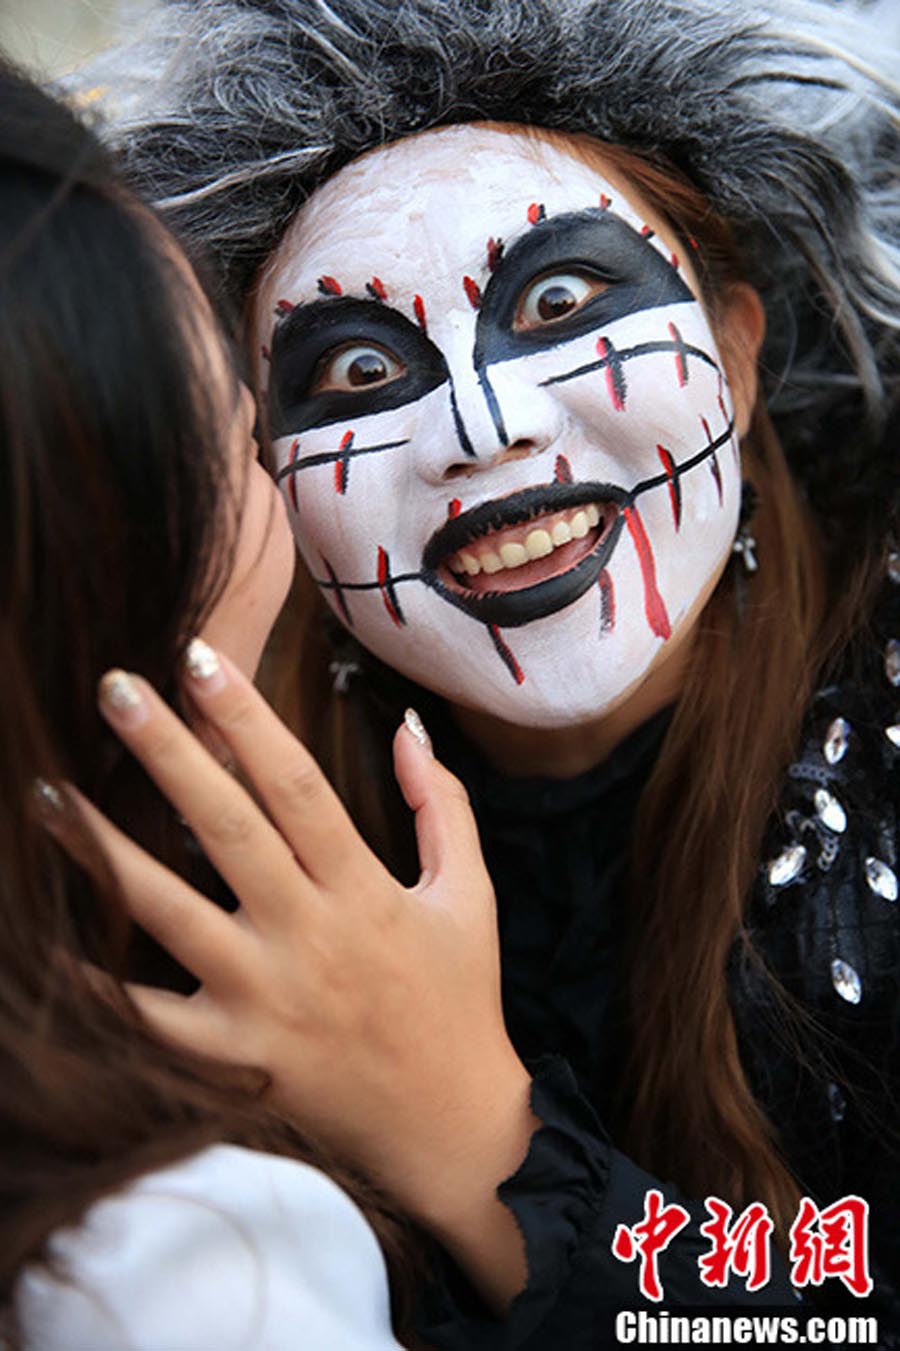 13 октября шанхайский парк развлечений и аттракционов Happy Valley стал «миром чудовищ», к наступающему празднику Хэллоуин. 